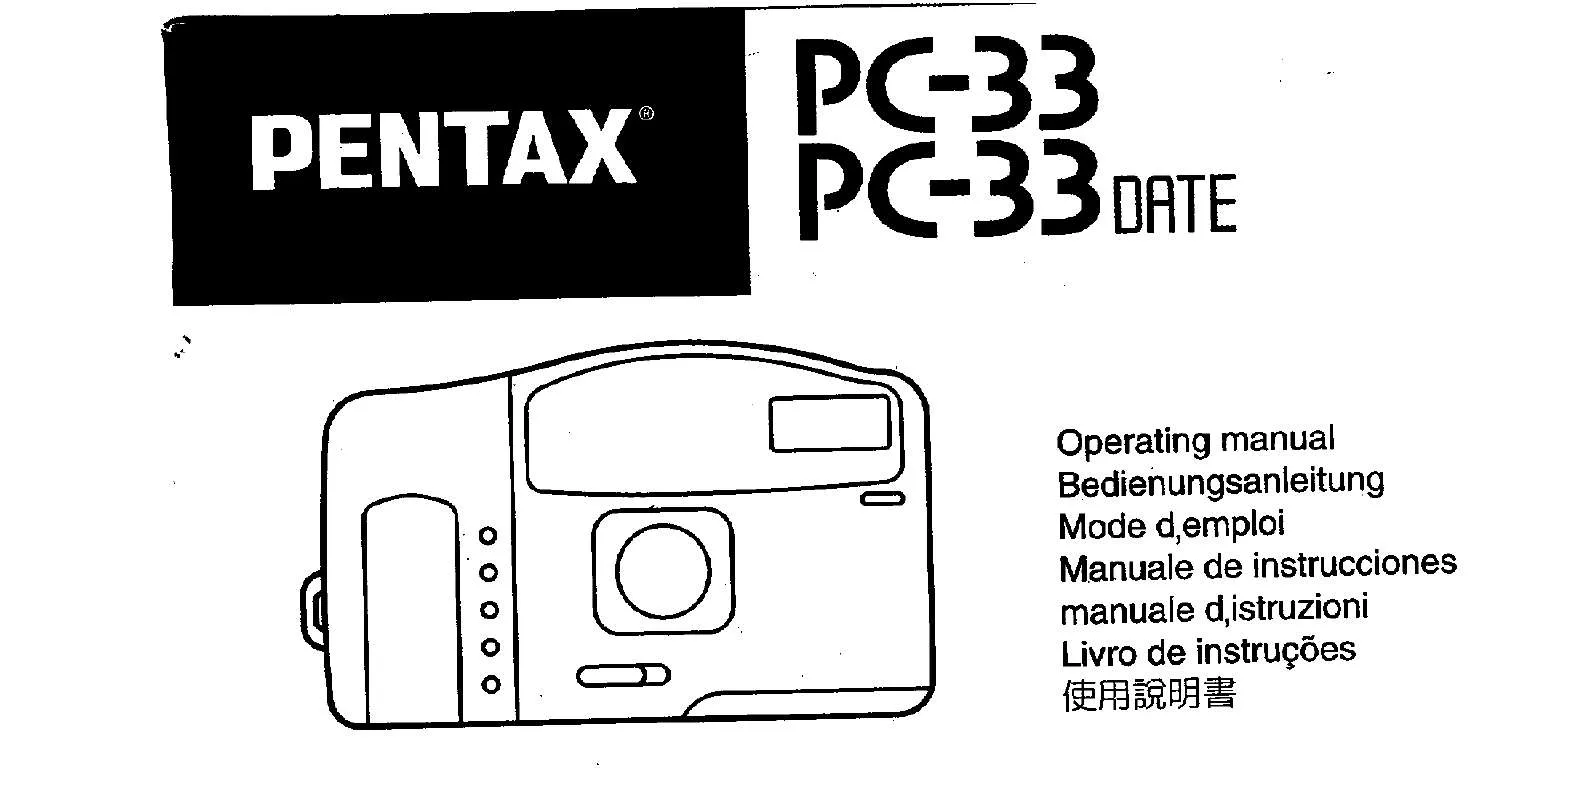 Mode d'emploi PENTAX PC 33